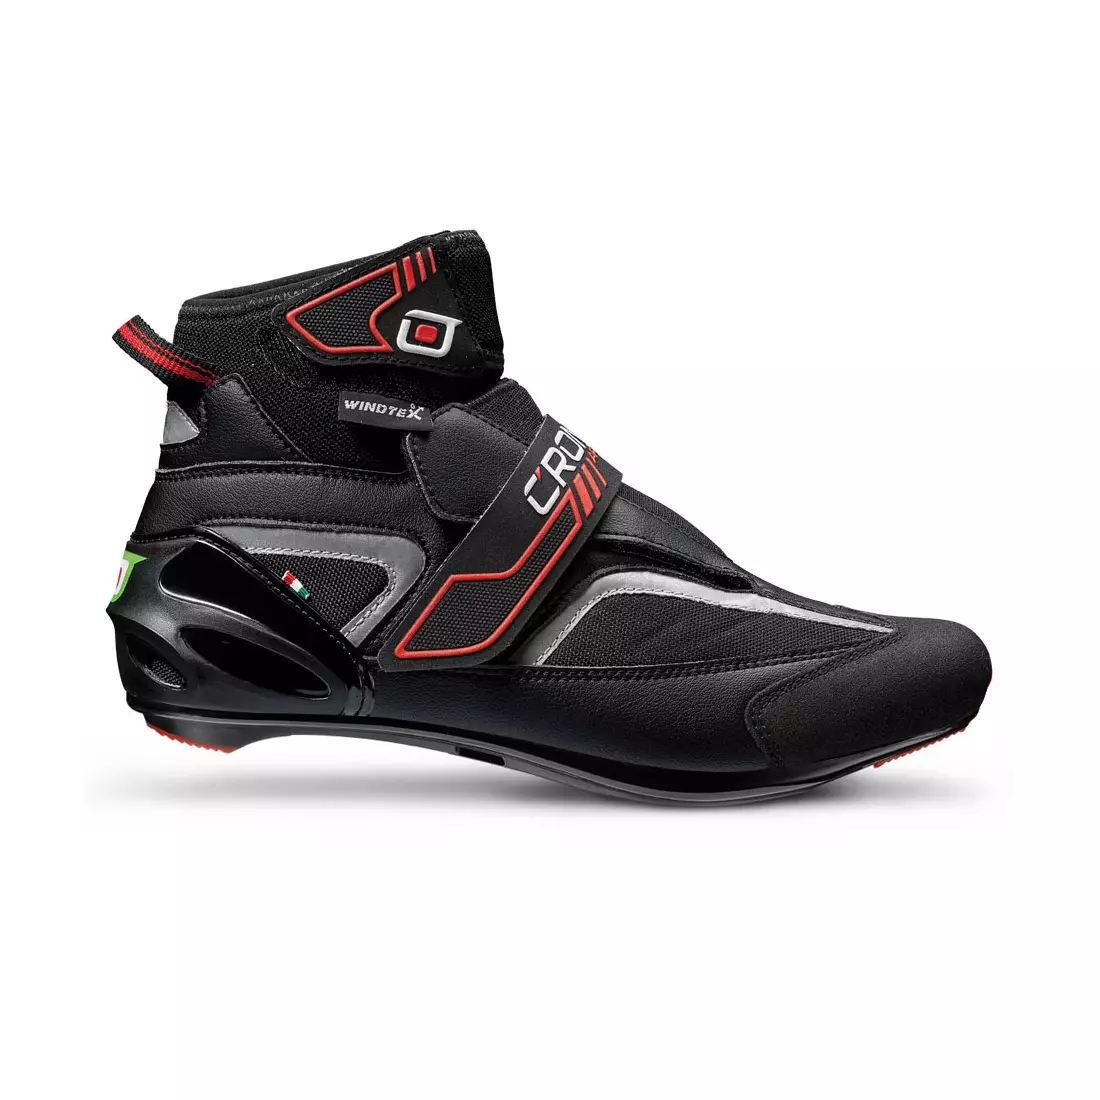 CRONO ARTICA ROAD - pantofi de iarna pentru ciclism rutier - culoare: Negru